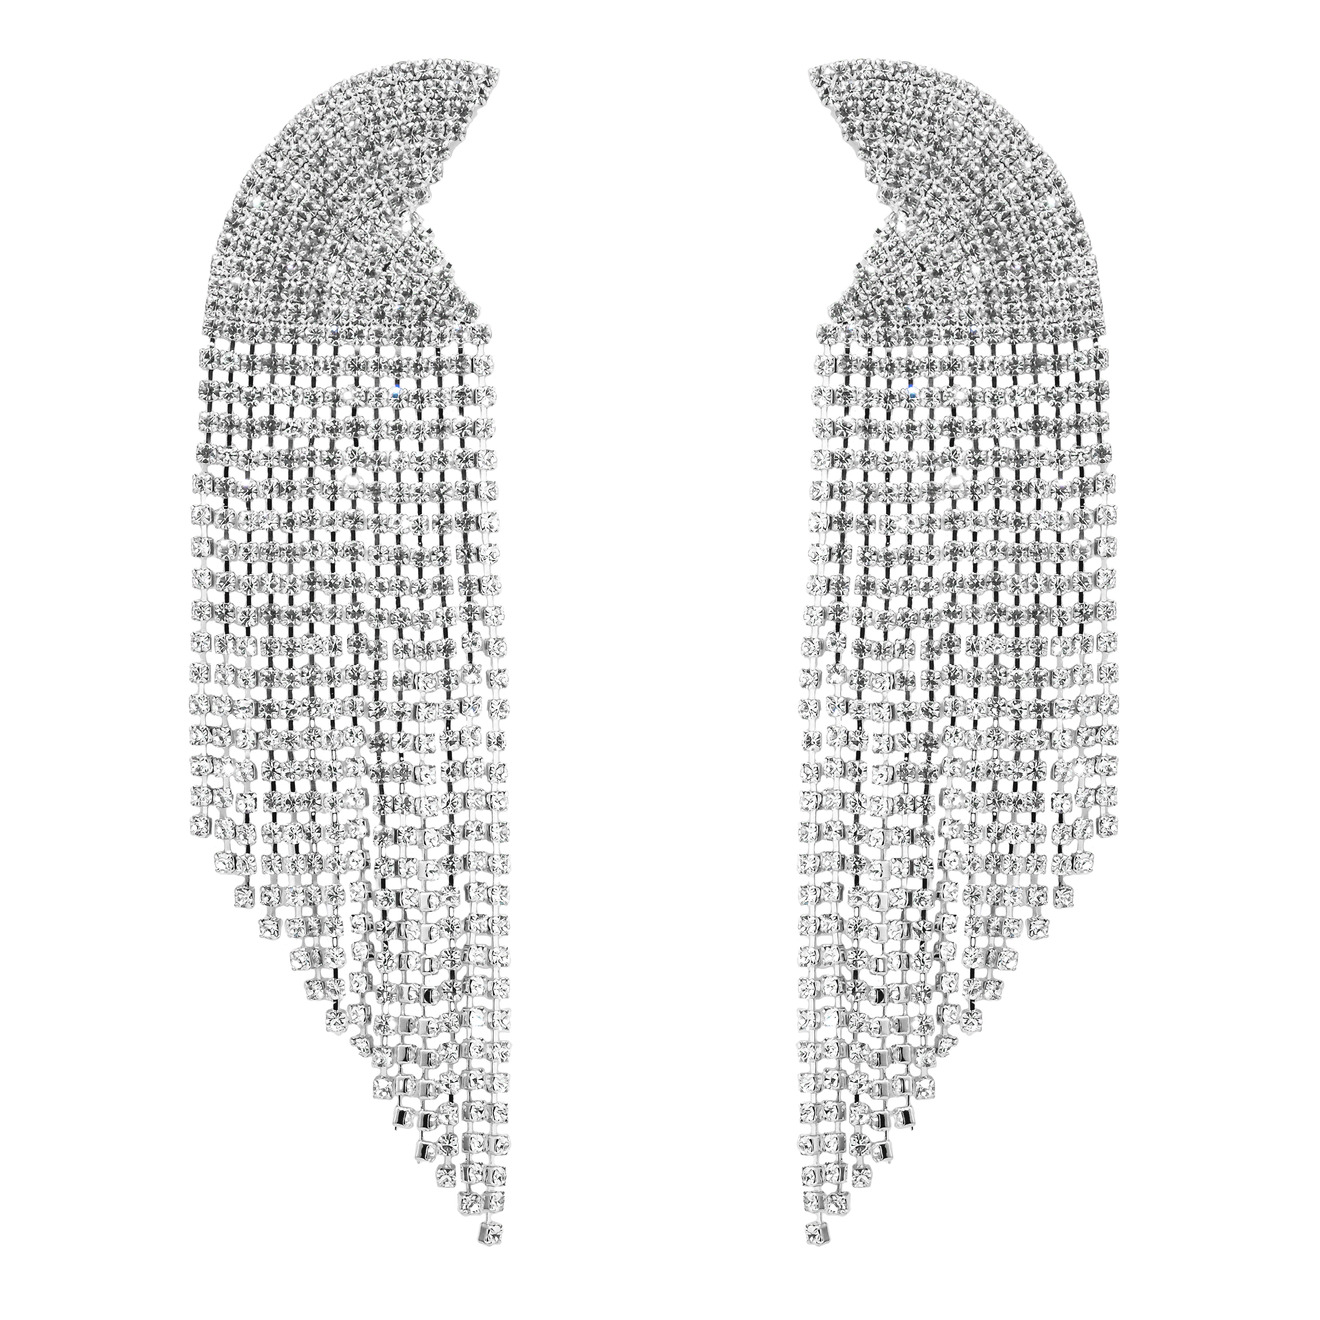 Herald Percy Серебристые серьги-полукруги с кристаллами herald percy серебристые серьги бабочки с кристаллами